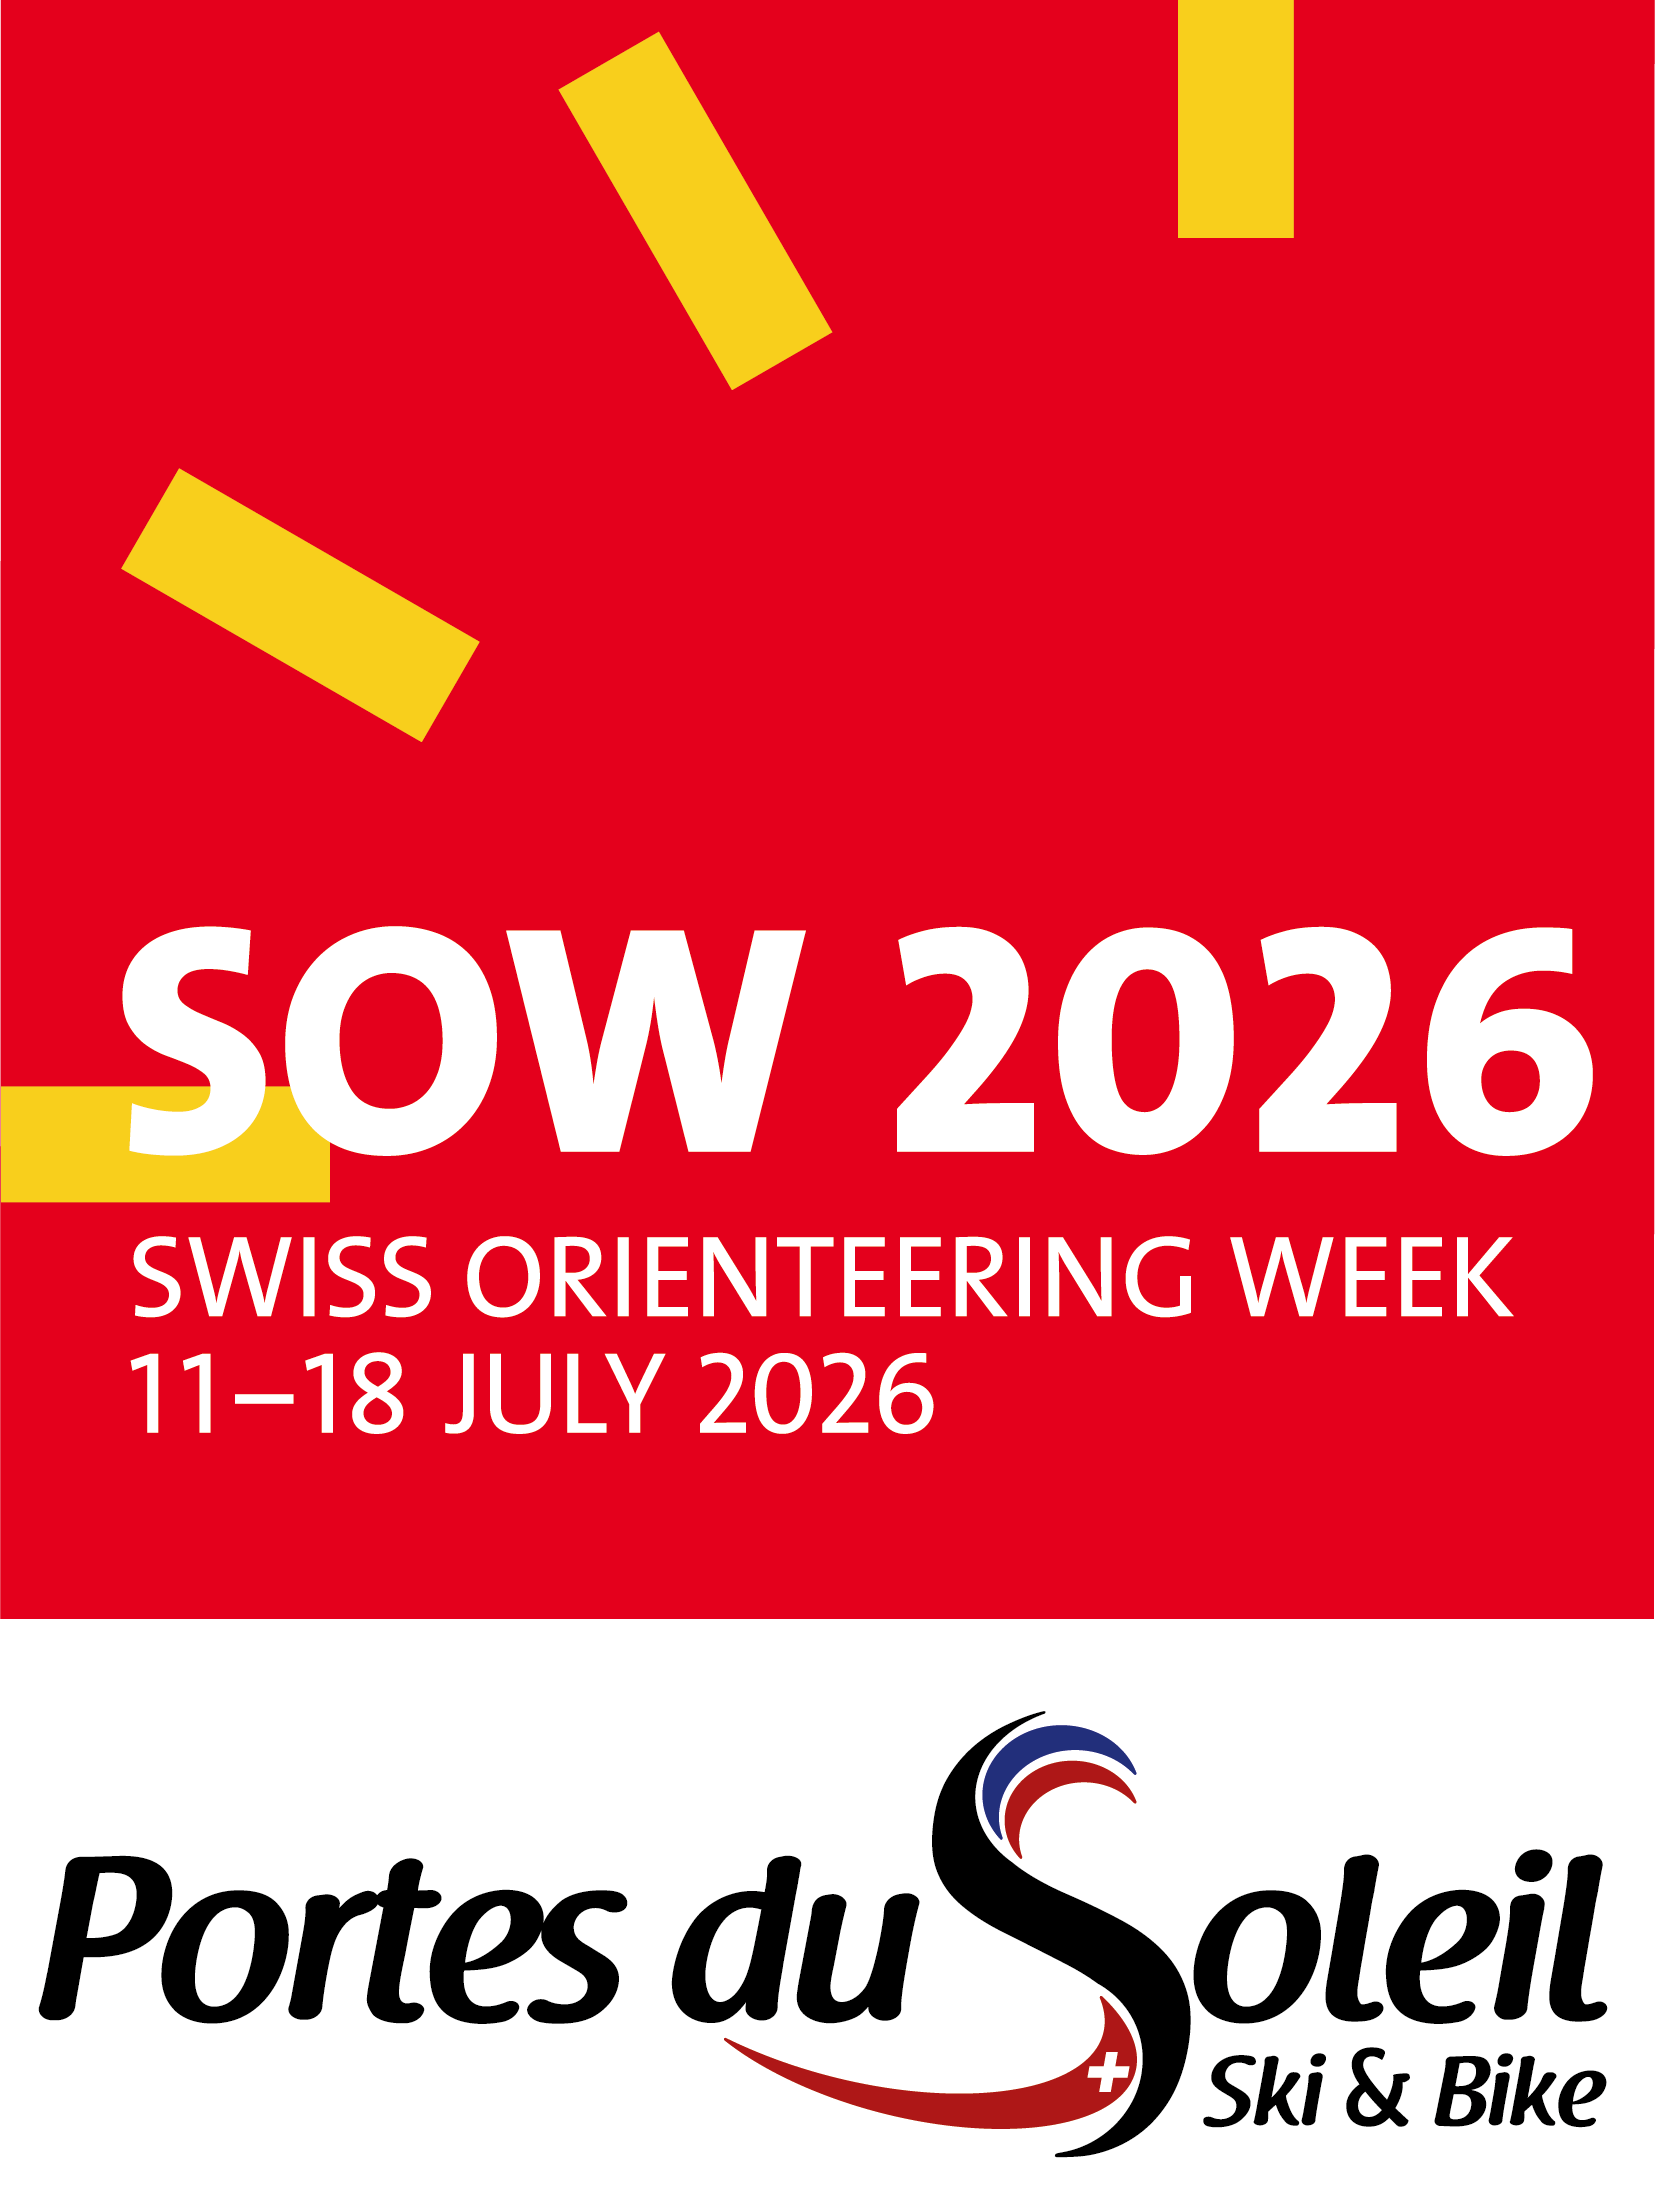 Swiss Orienteering Week Logo 2026 Portes du Soleil